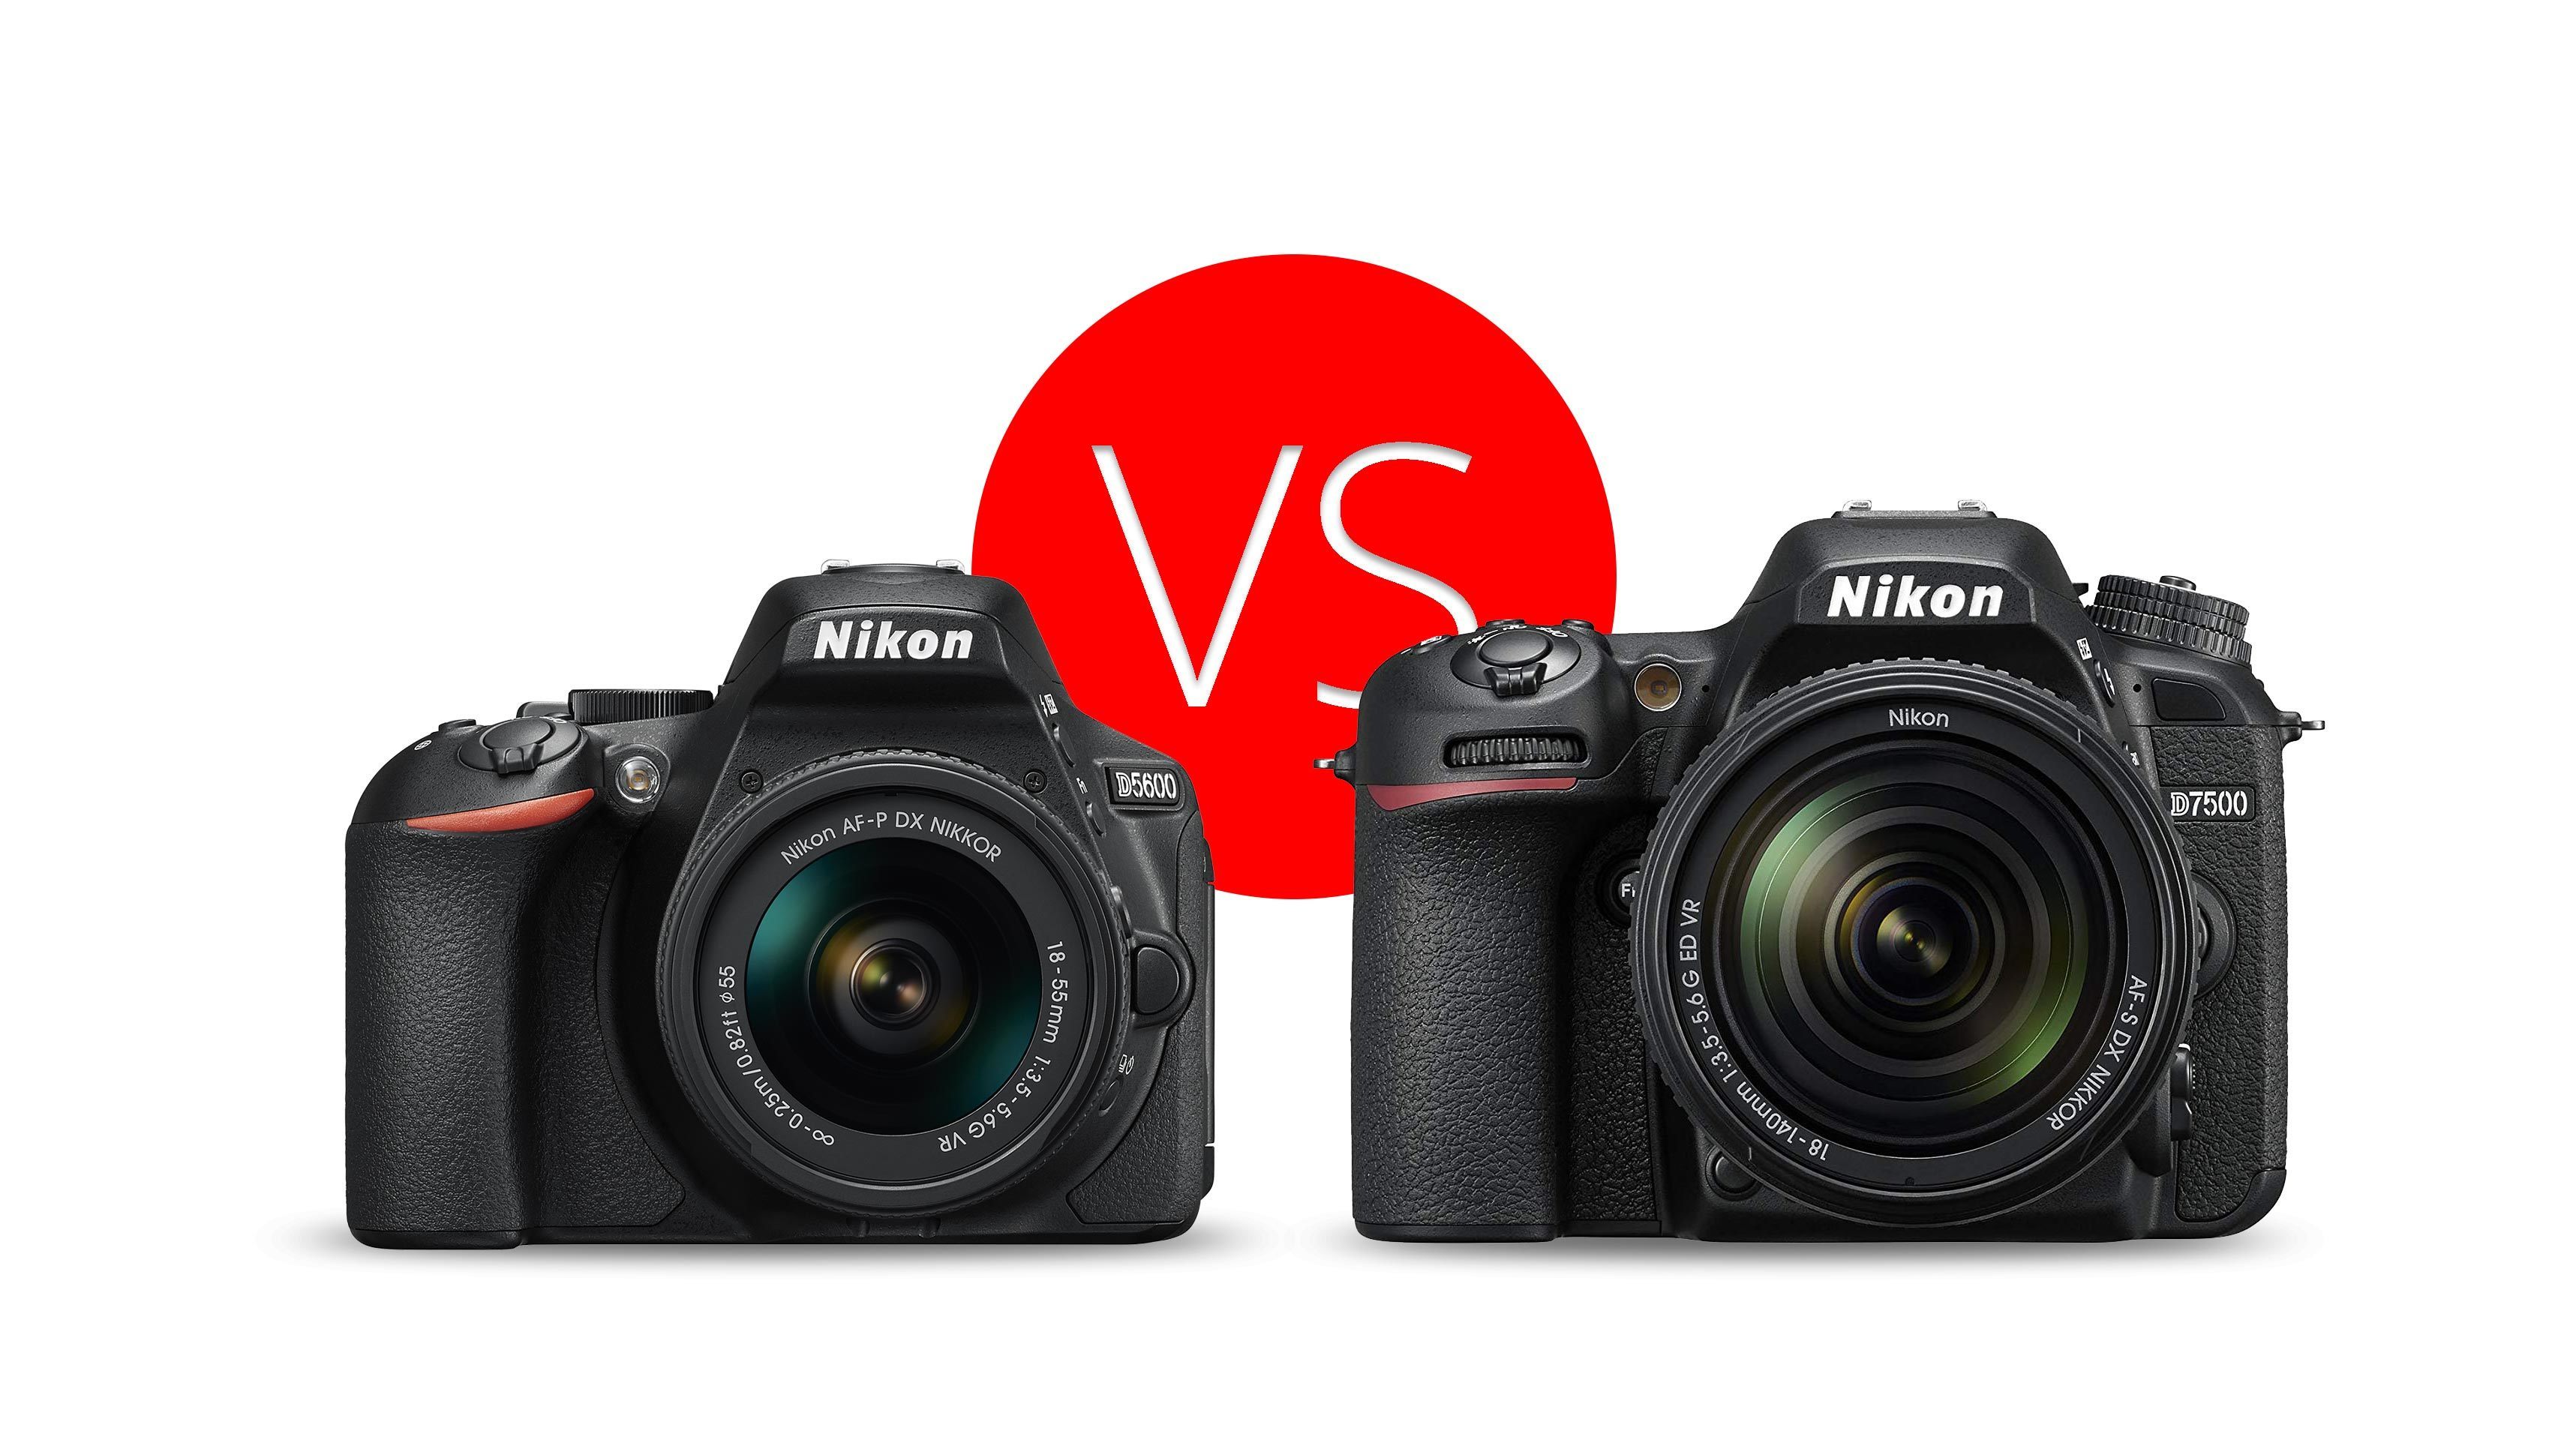 Nếu bạn đang phân vân chọn mua máy ảnh Nikon D5600 hay D7500 thì hãy đến với chúng tôi để tìm hiểu và mua sản phẩm chính hãng nhé. Chúng tôi luôn mang đến sự tin tưởng và hài lòng cho khách hàng với chất lượng sản phẩm cũng như dịch vụ bán hàng tốt nhất. 